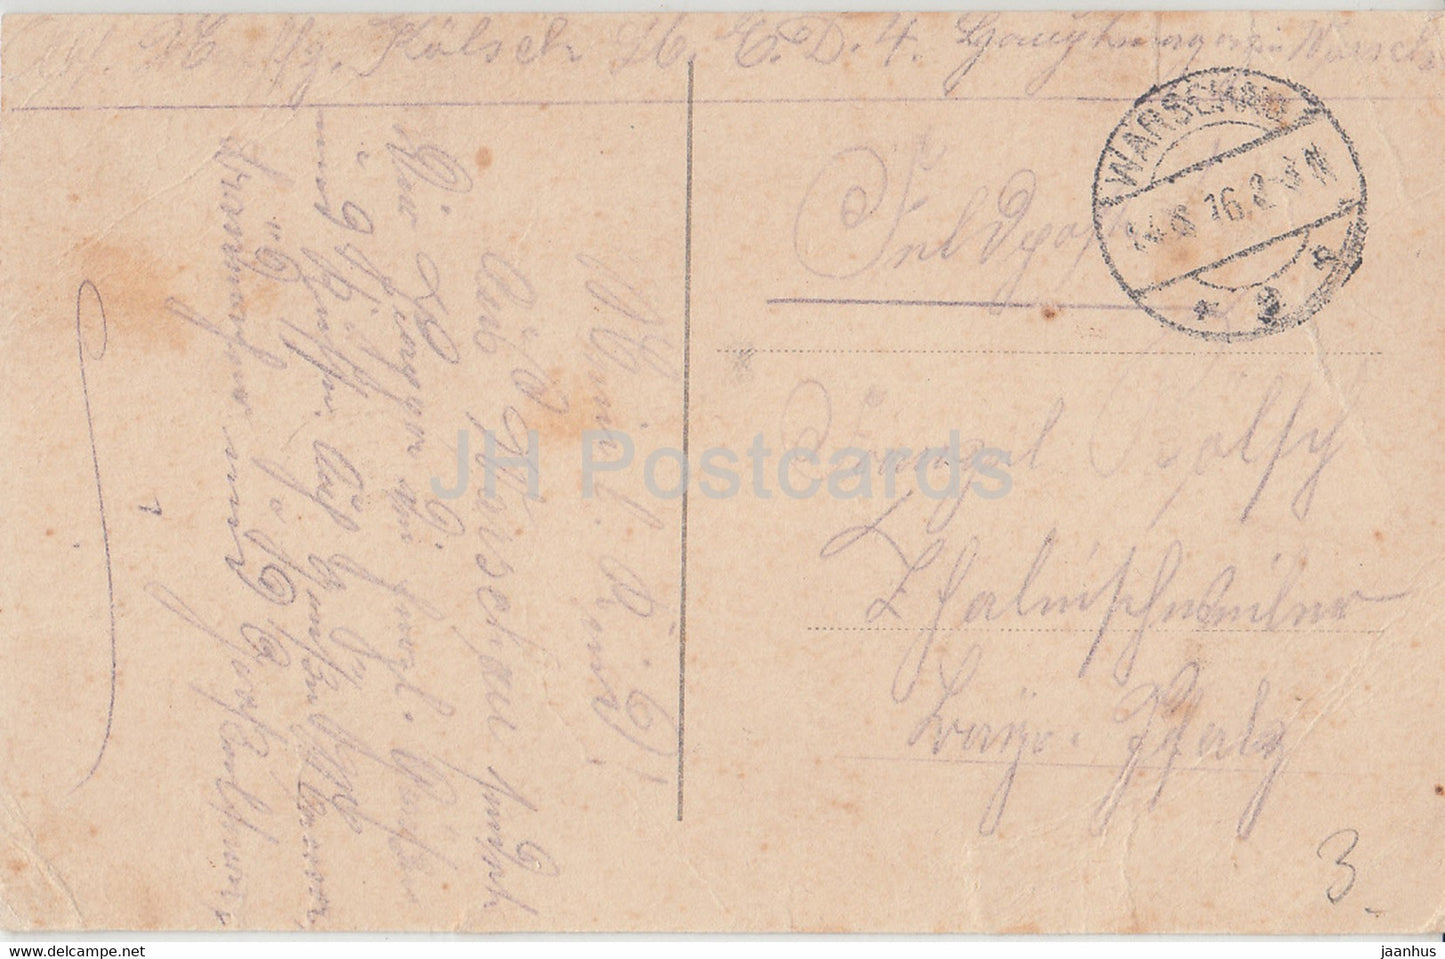 Warschau - Denkmal Konigs Sigizmund - Feldpost - old postcard - 1916 - Poland - used